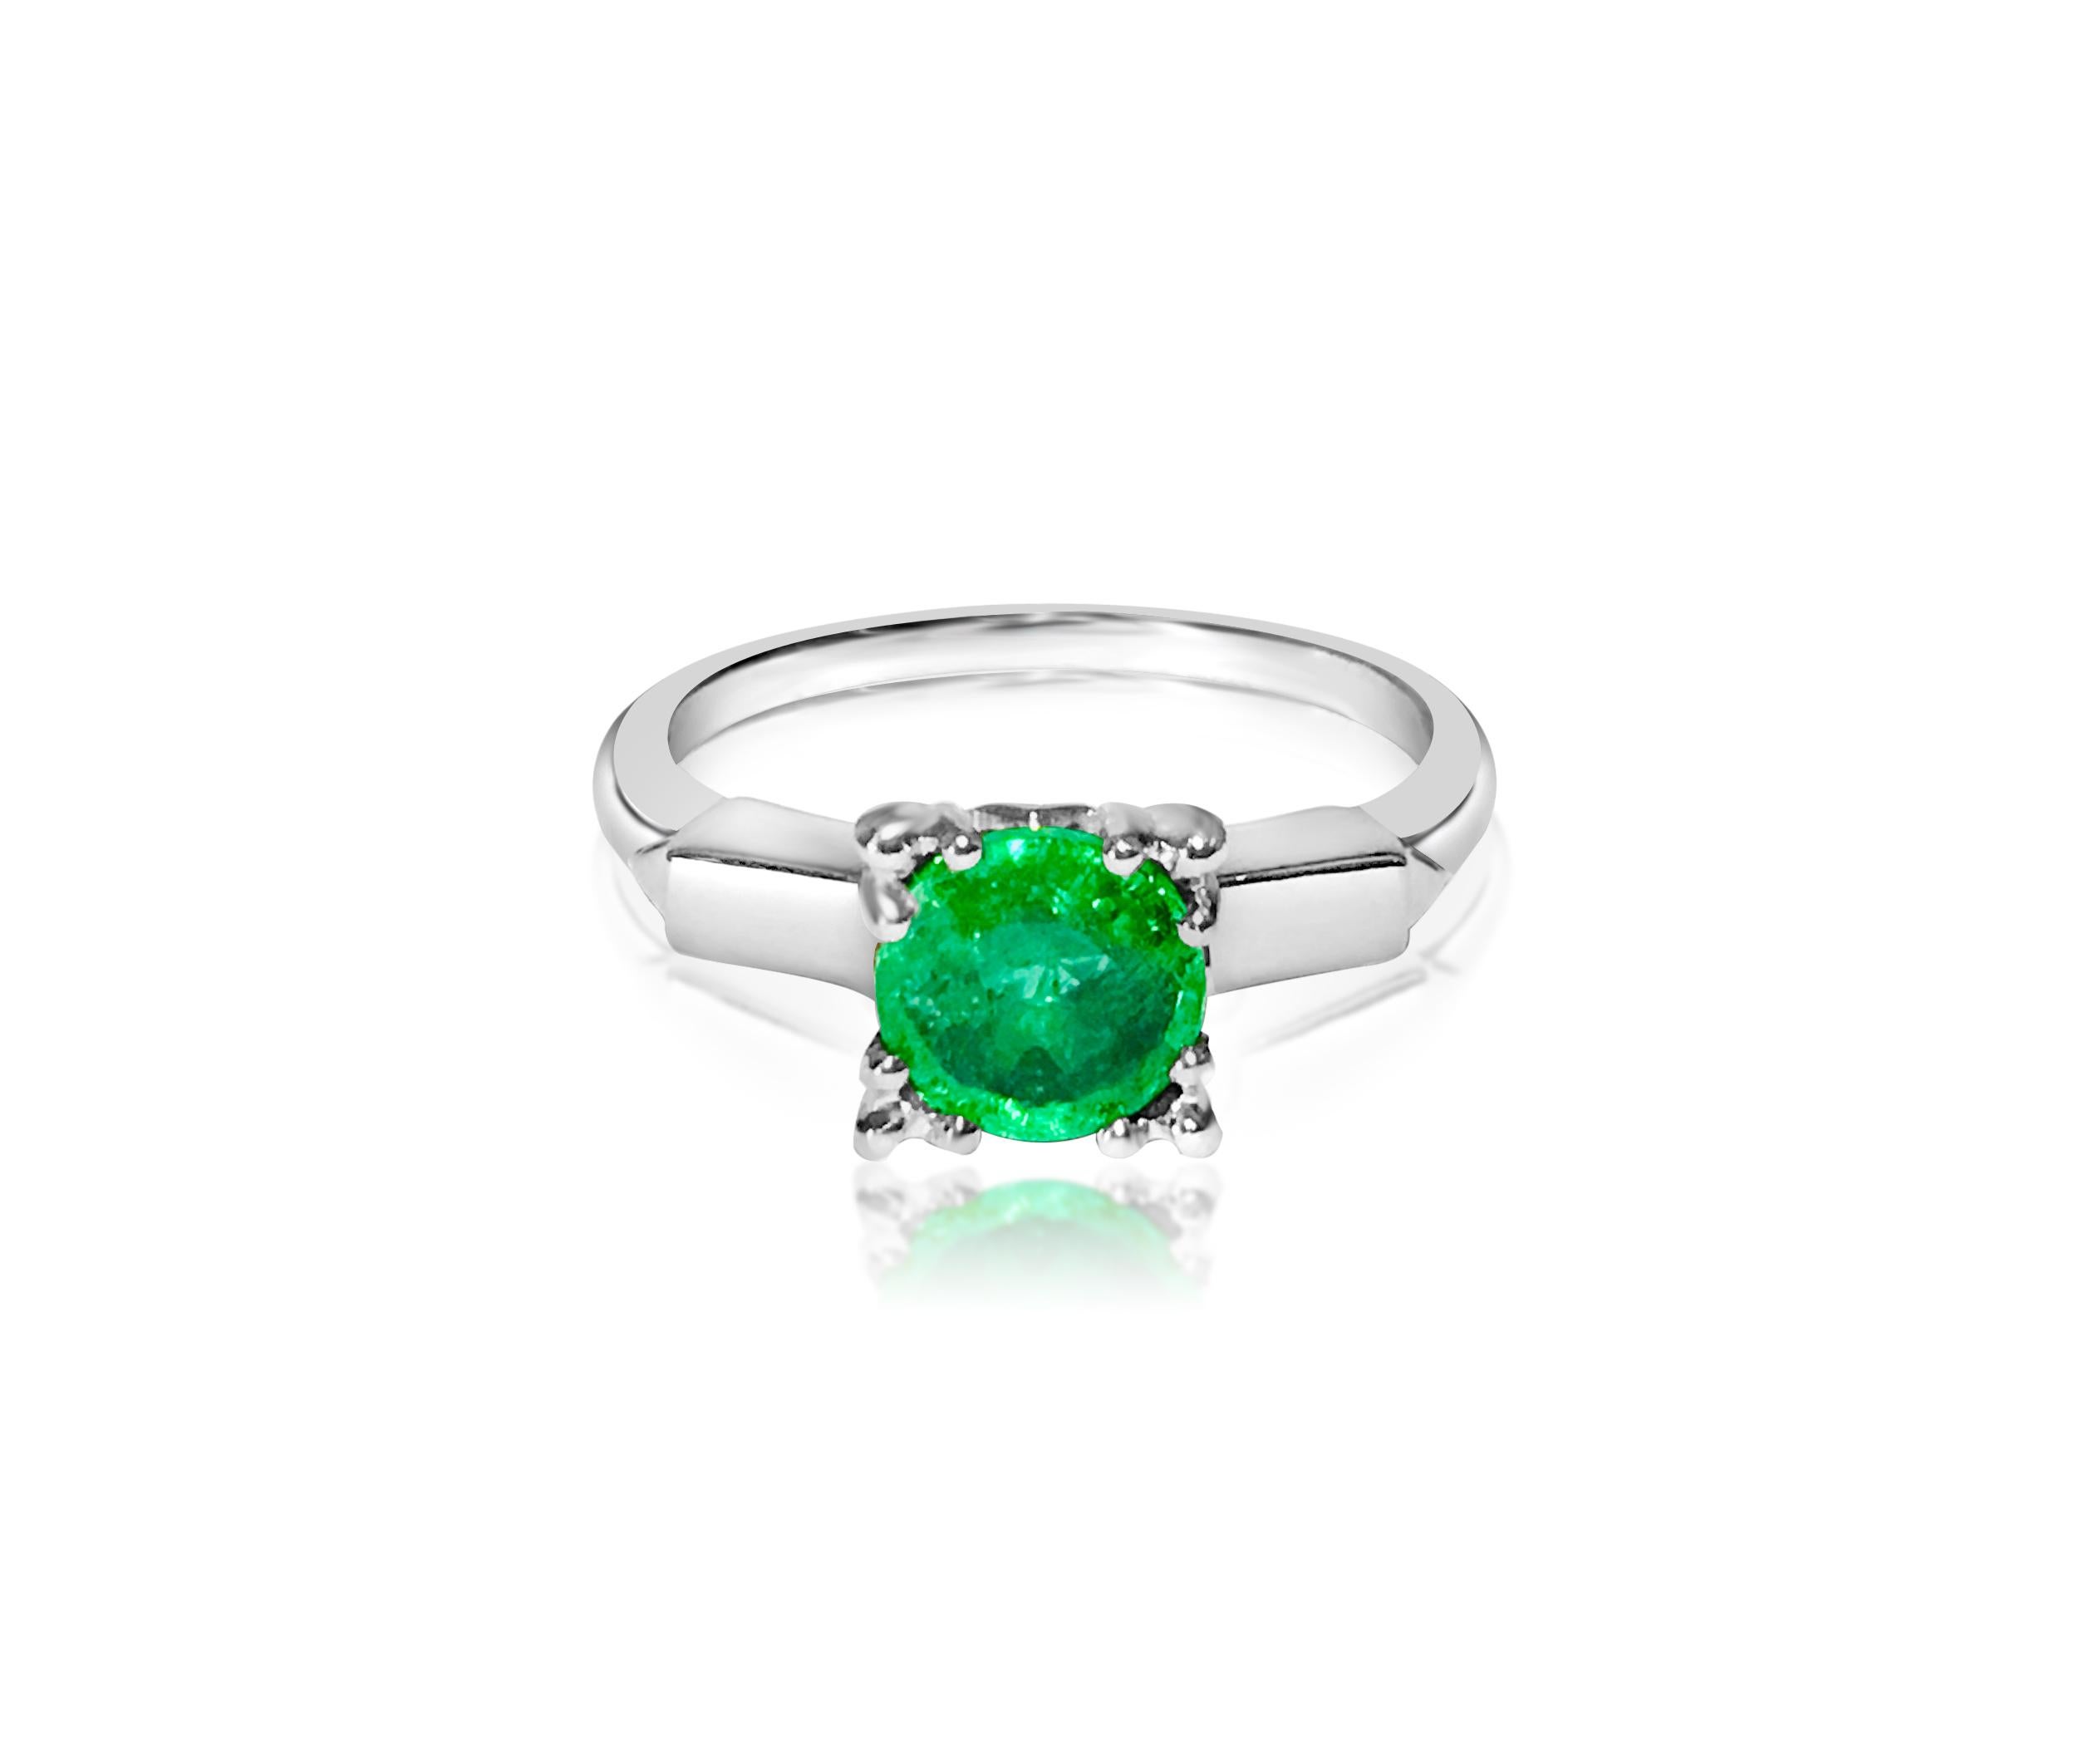 Dieser exquisite Vintage-Ring besticht durch einen 2,00-karätigen Smaragd, der mit seinem intensiven Grünton den Betrachter in seinen Bann zieht. Dieser aus Platin gefertigte Ring strahlt Eleganz und Raffinesse aus, und sein einzigartiges Design